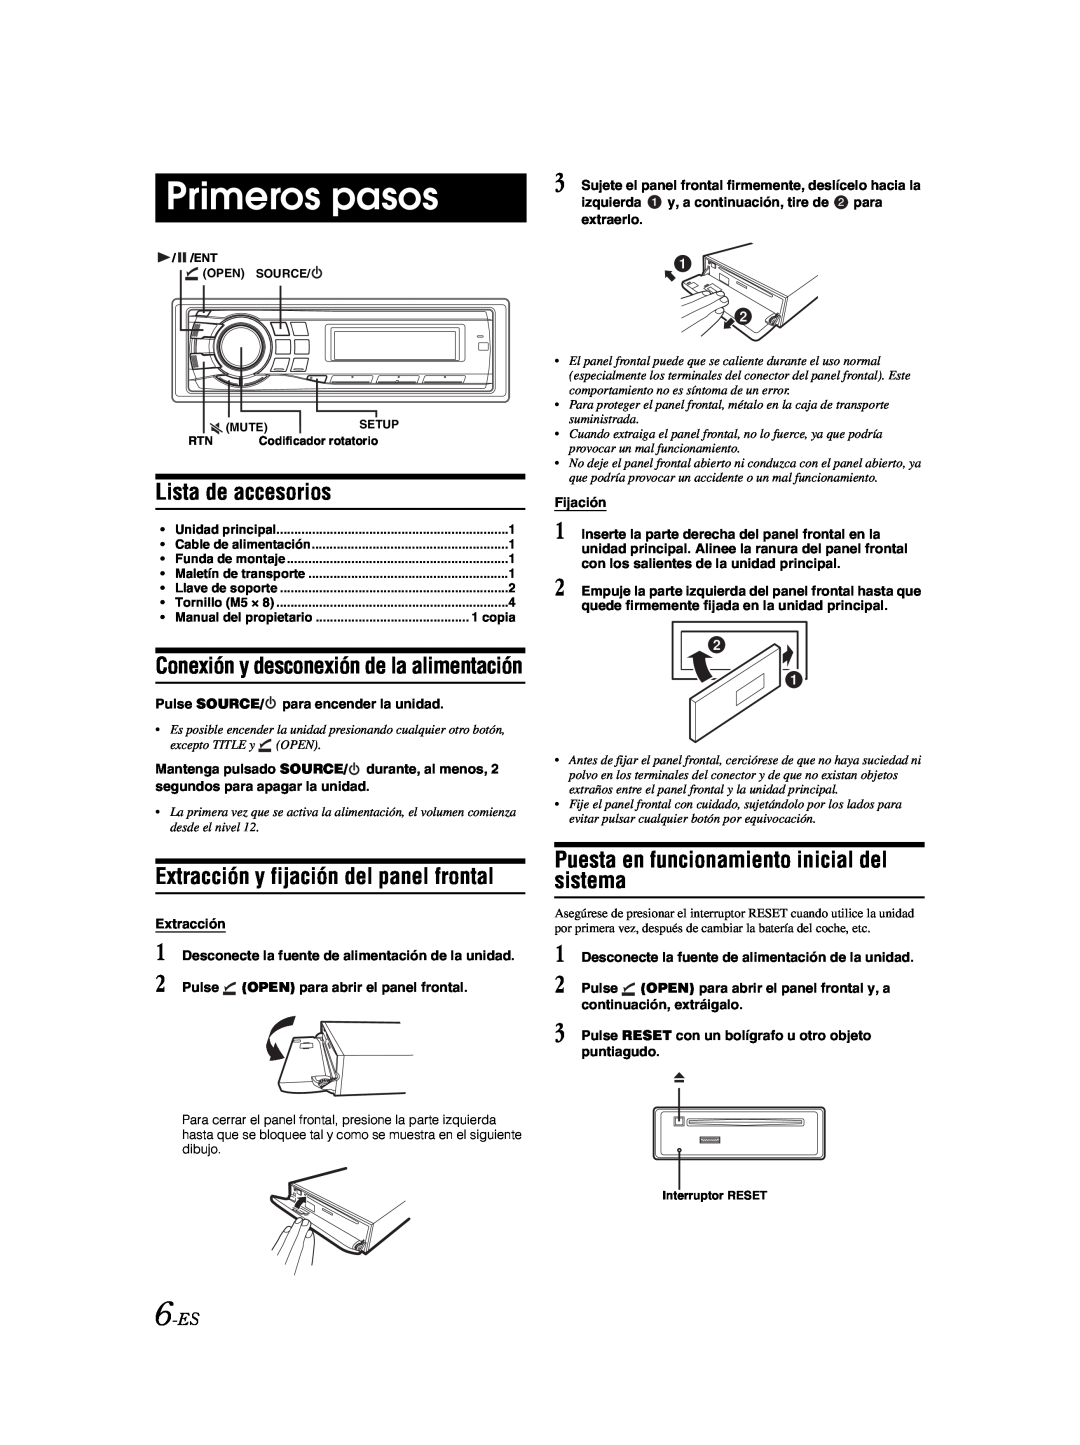 Alpine CDE-9881 owner manual Primeros pasos, Lista de accesorios, Extracción y fijación del panel frontal, 6-ES 